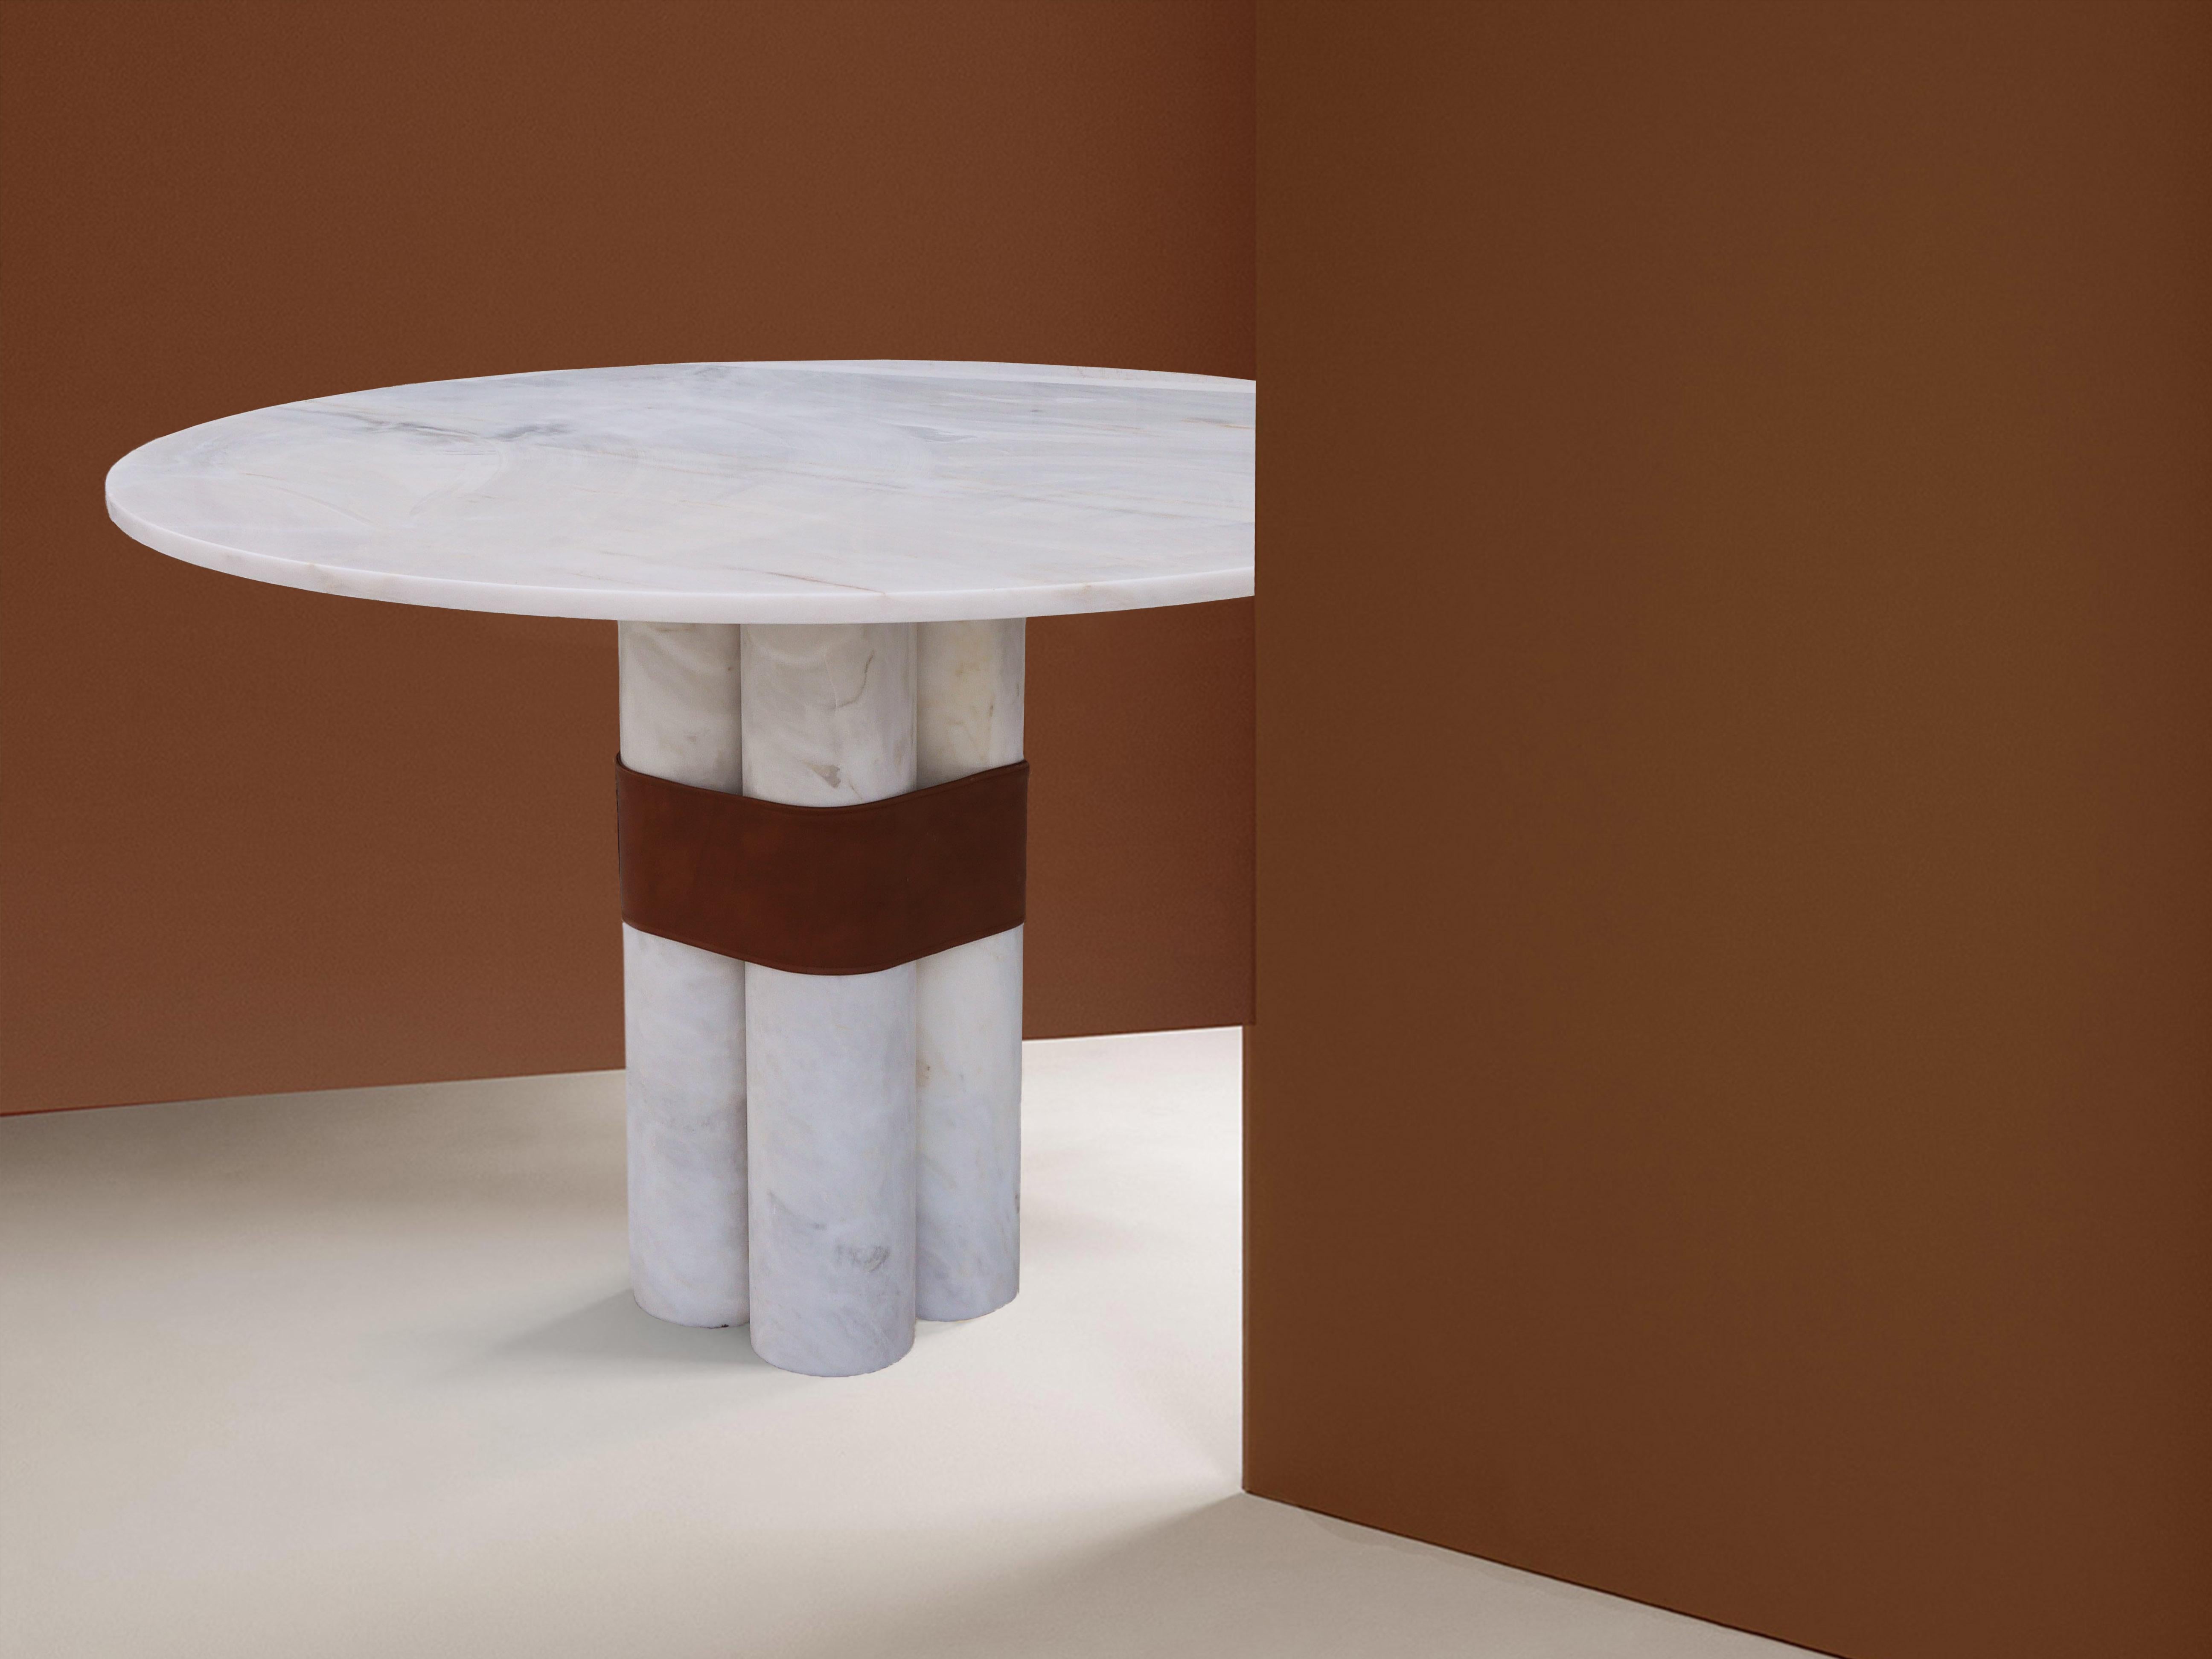 AXIS Runder Tisch 
Sein Sockel, der aus einem einzigen dünnen Block besteht, der an runde Säulen erinnert, und seine runde Spitze schaffen ein fast architektonisches Gleichgewicht. Der handgefertigte Öko-Ledergürtel, der die Struktur umschließt,